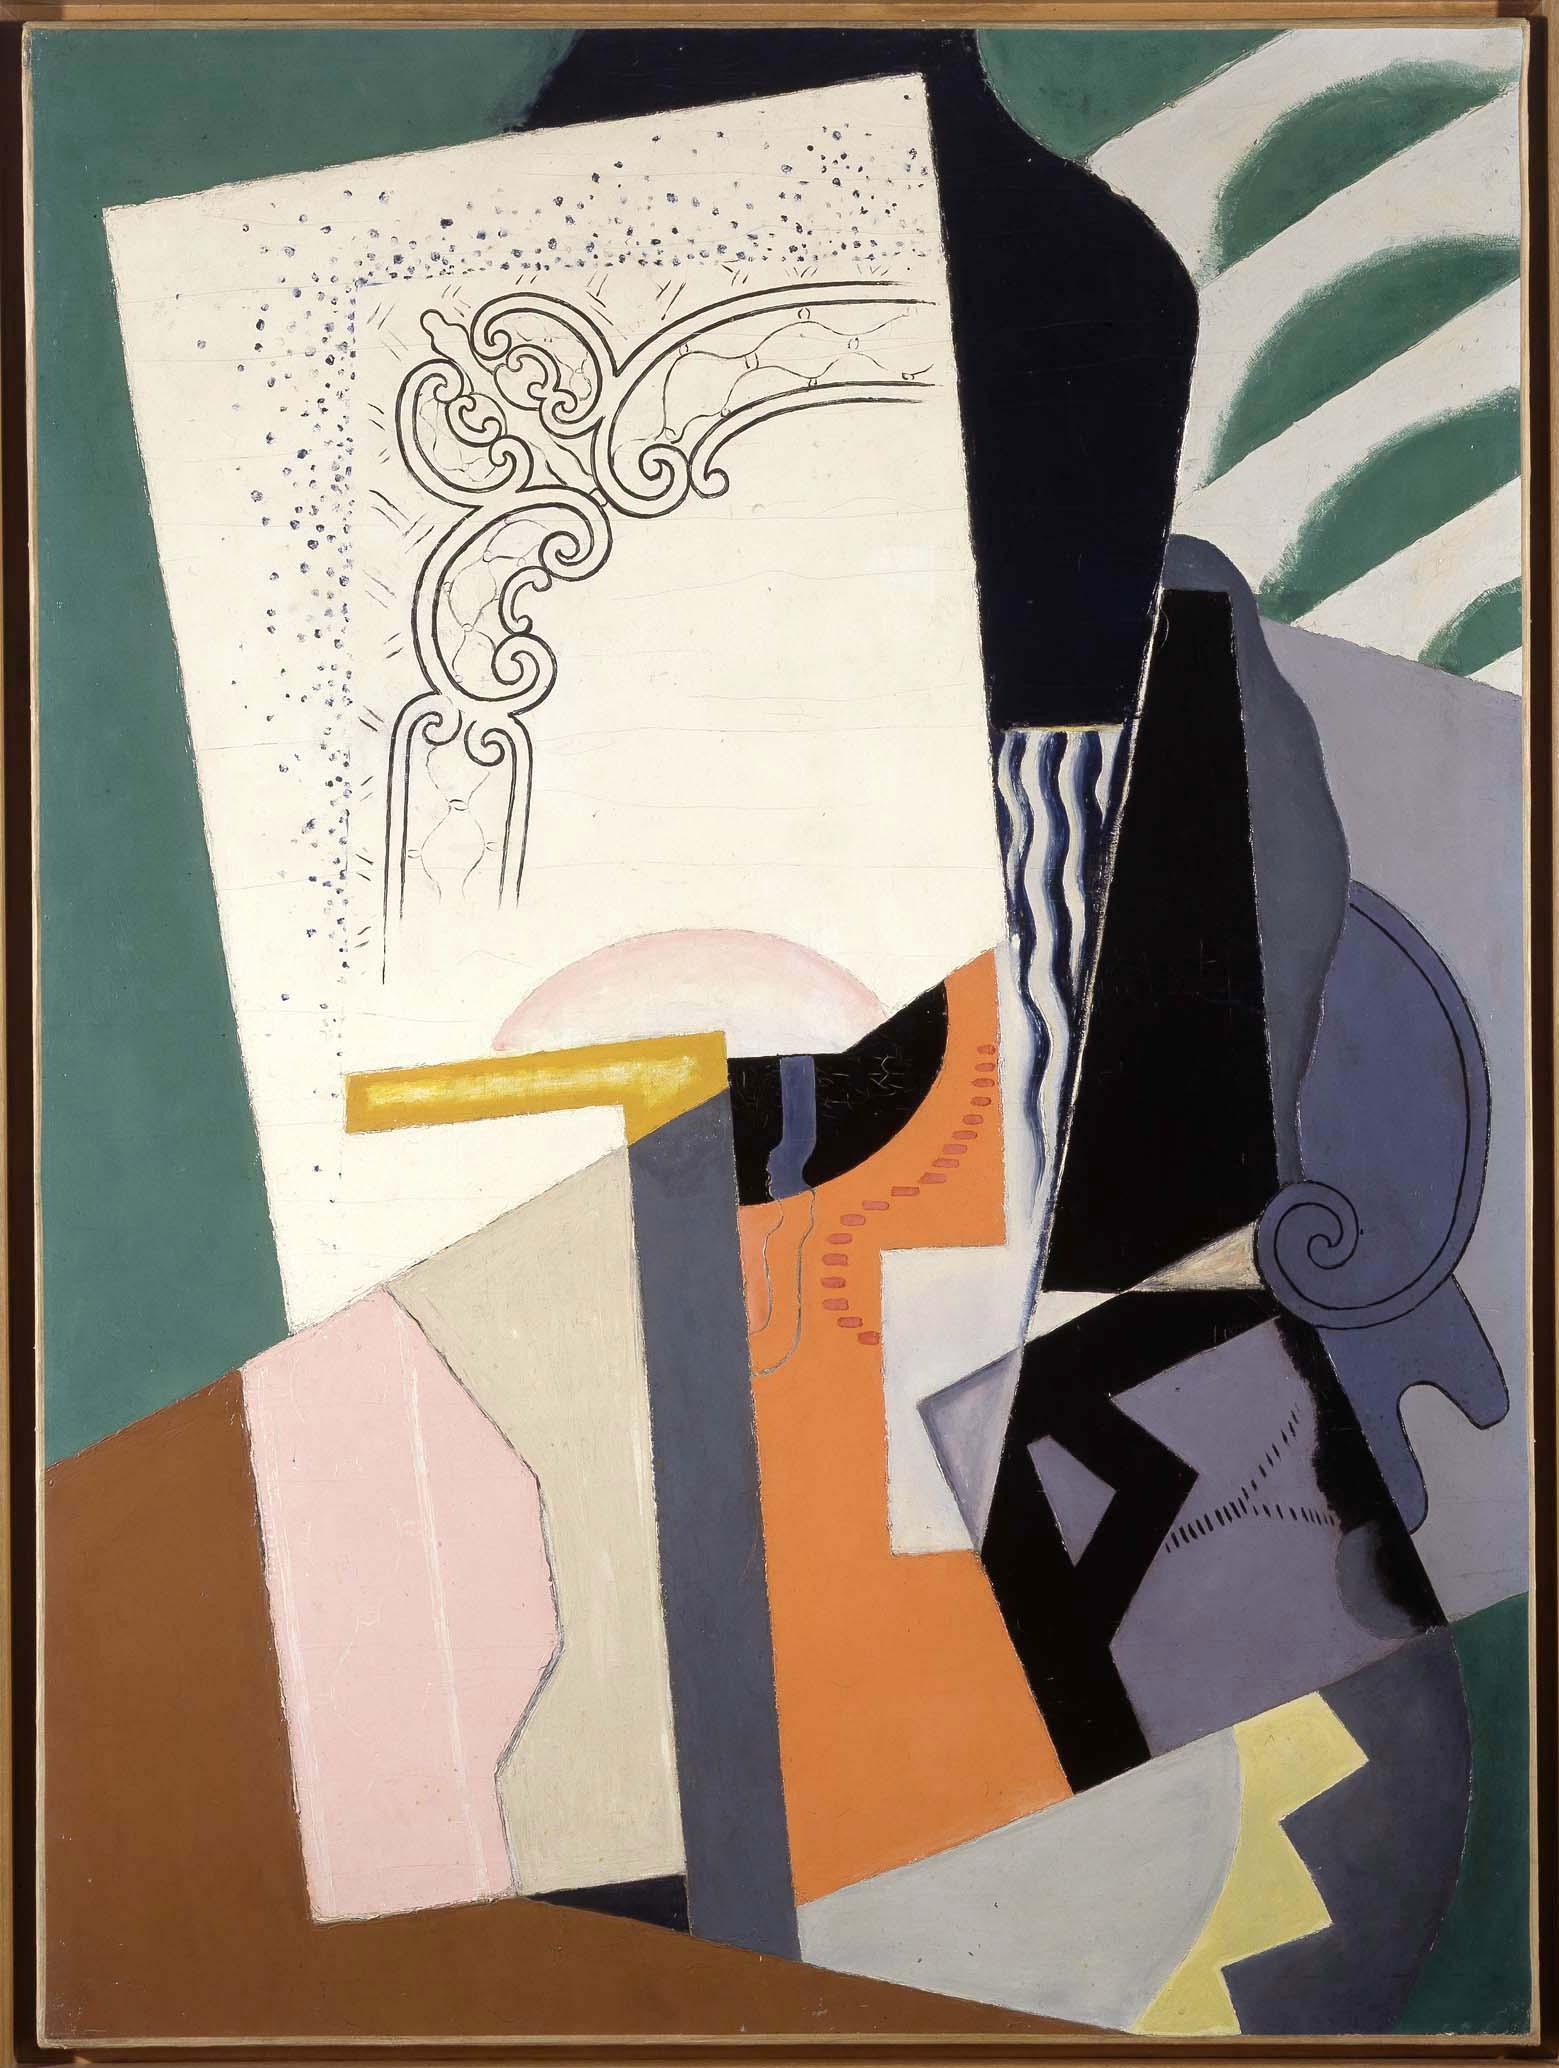 Cubist Composition by María Blanchard - 1916-1919 - 154 x 114 cm Museo Nacional Centro de Arte Reina Sofia